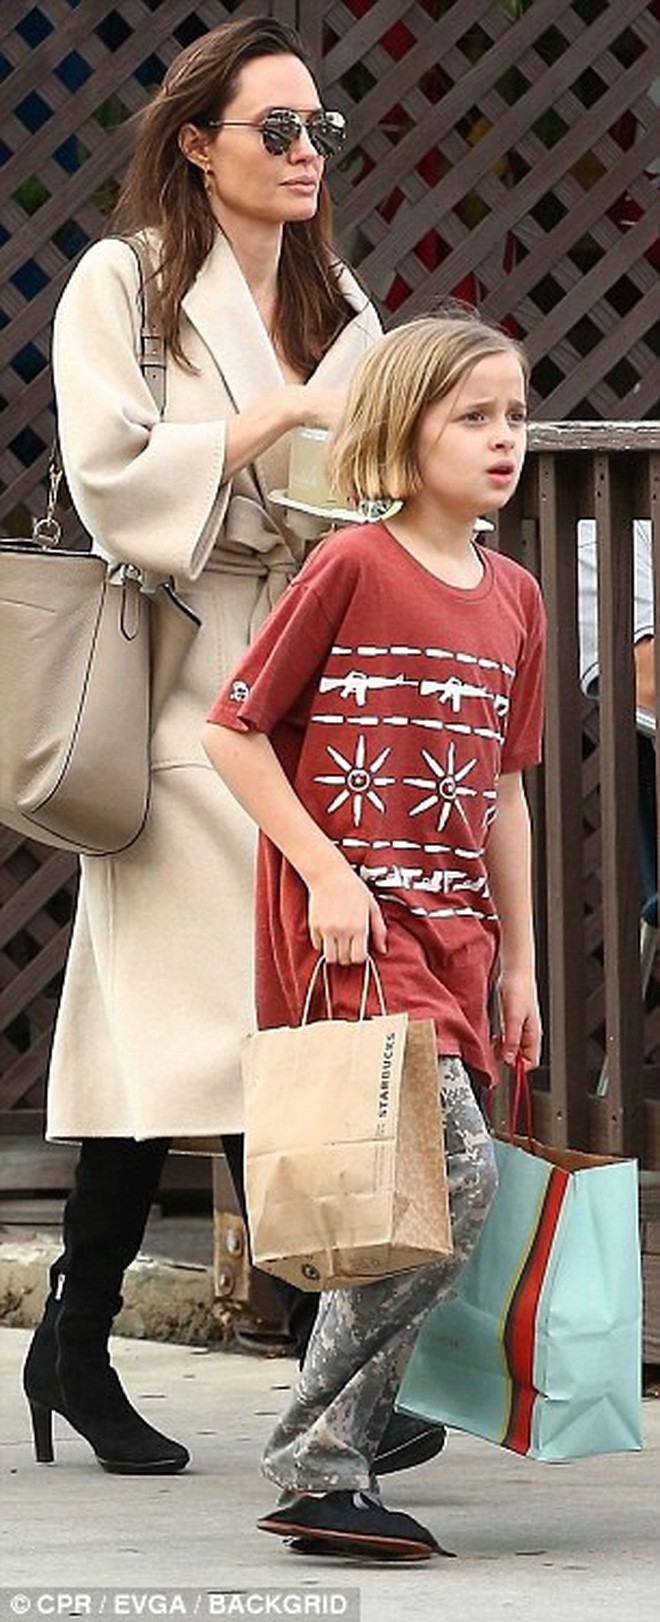 Angelina Jolie có hàng trăm tỷ, nhưng con gái cô lại mặc đồ giản dị và tự xách đồ khi mua sắm - Ảnh 2.